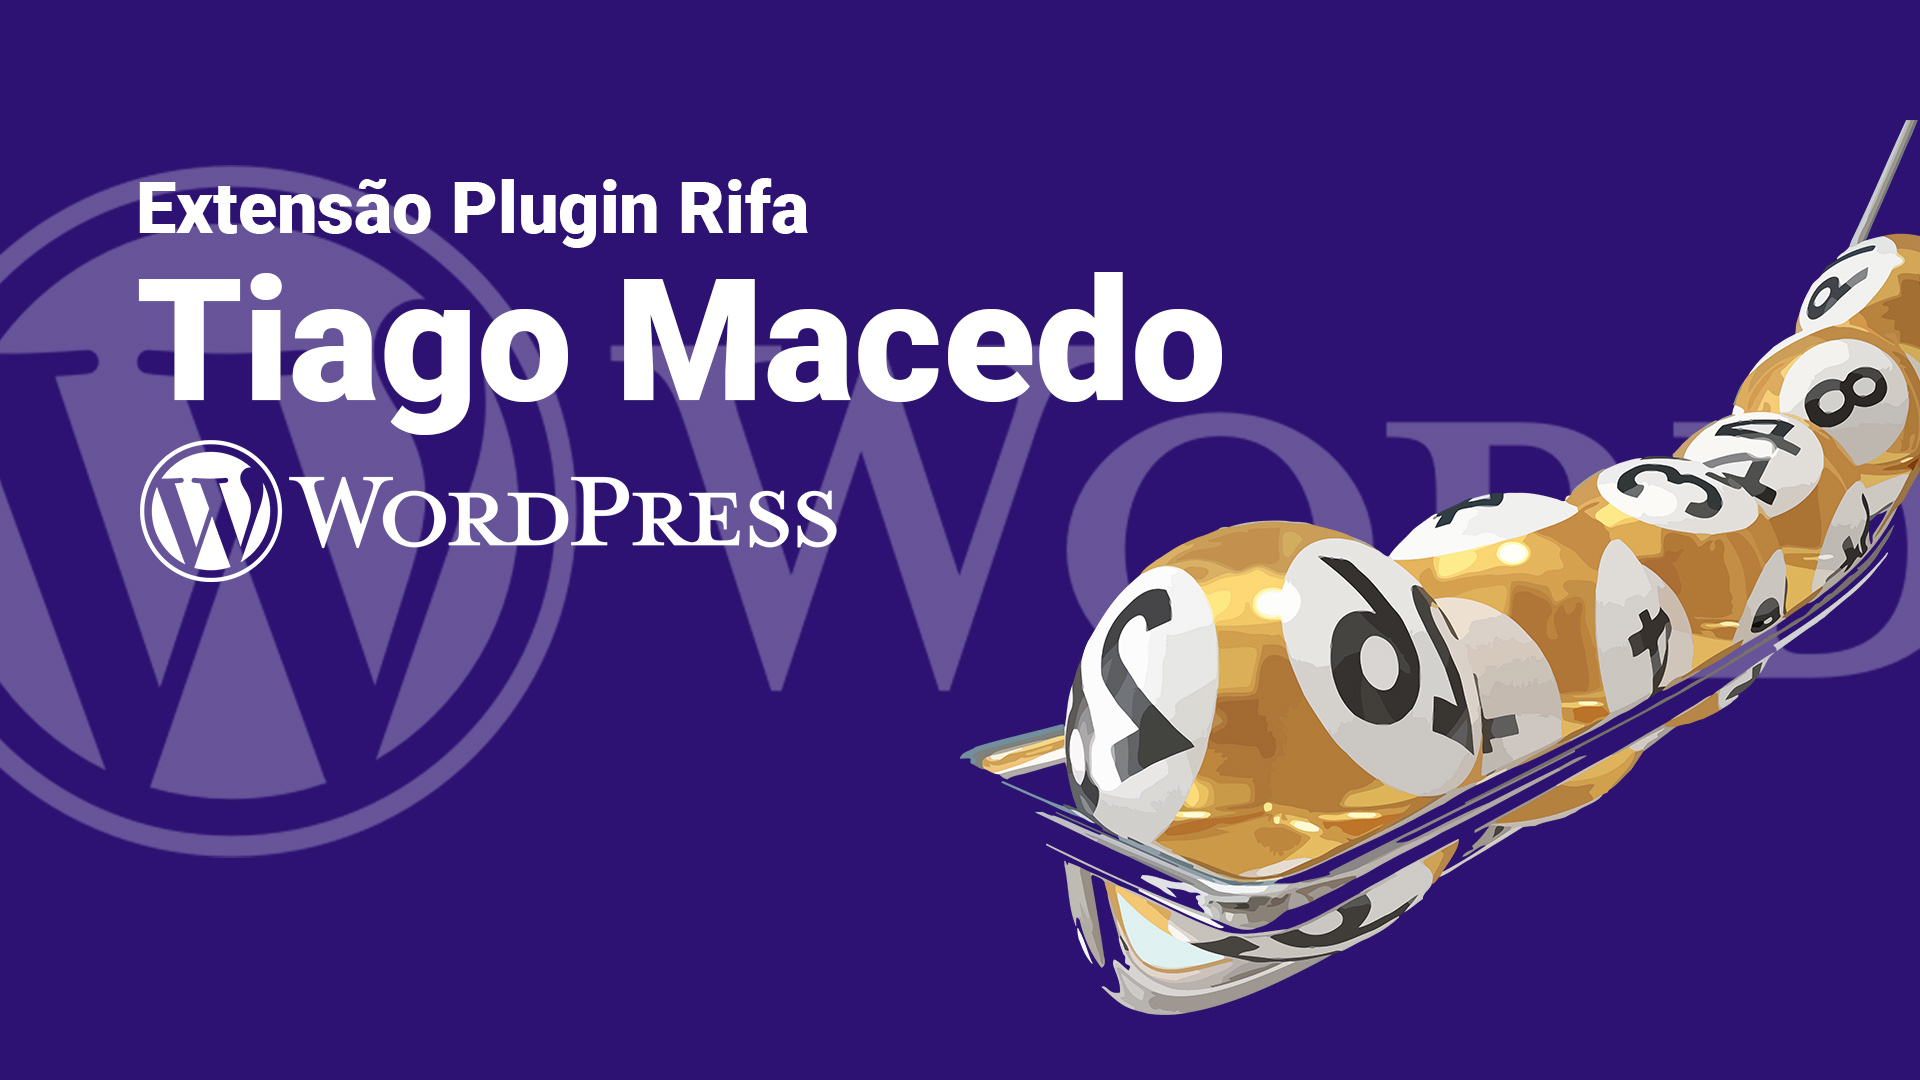 Plugin Extensão Rifa Tiago Macedo versão 1.0.0 24 de Fevereiro